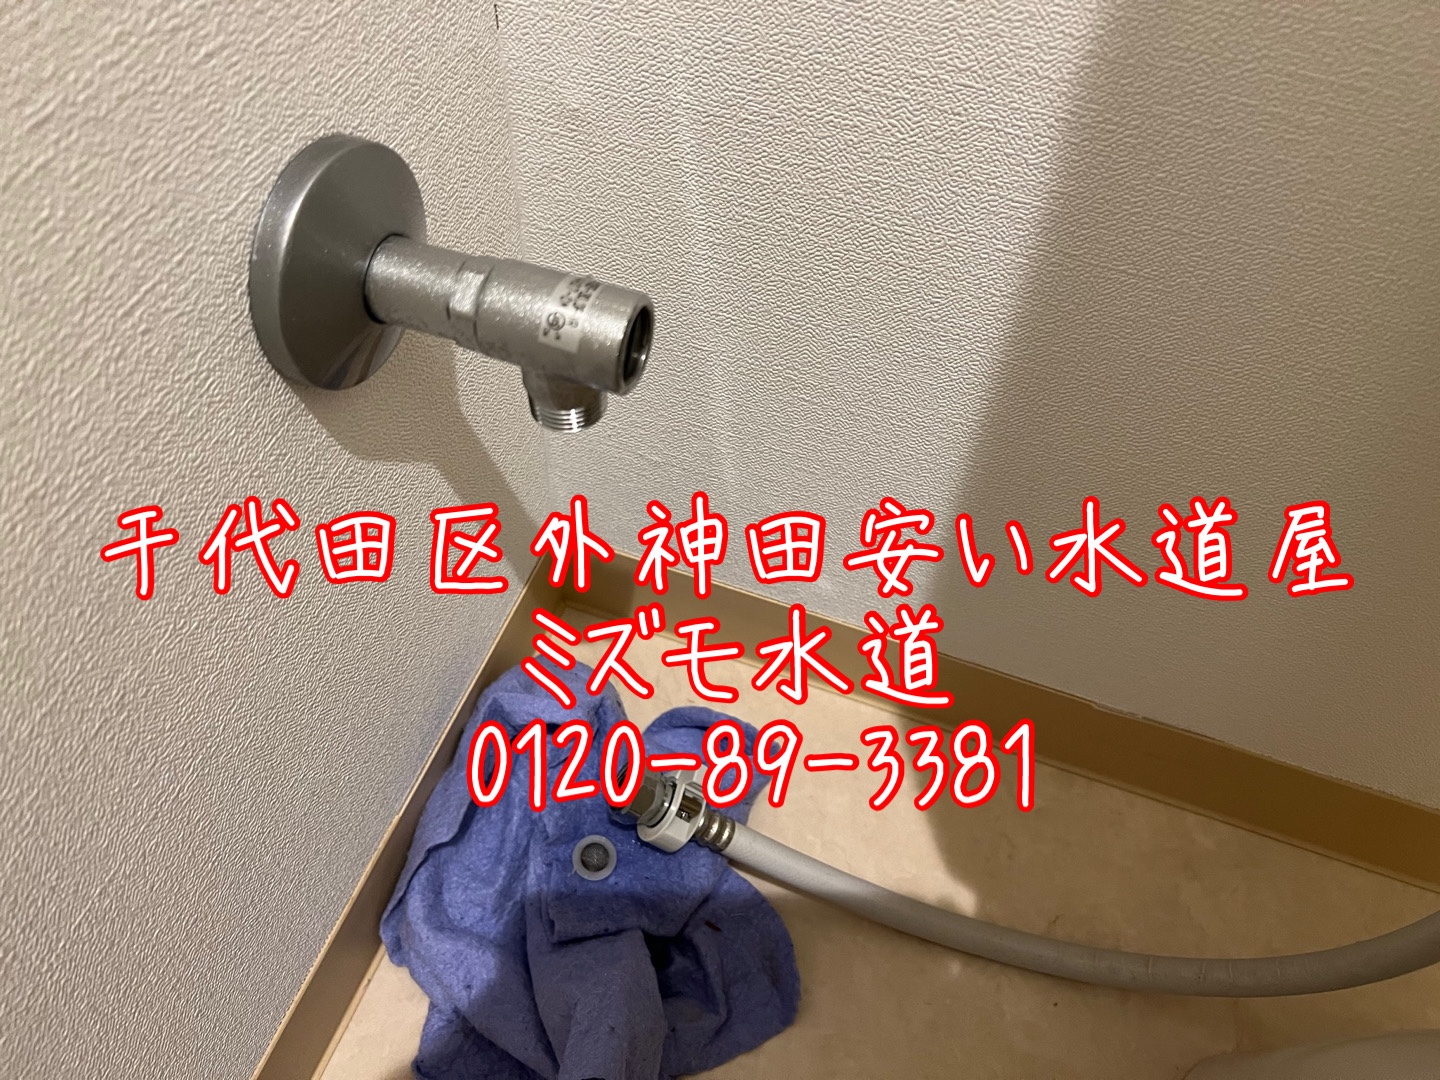 千代田区外神田トイレ水漏れ修理